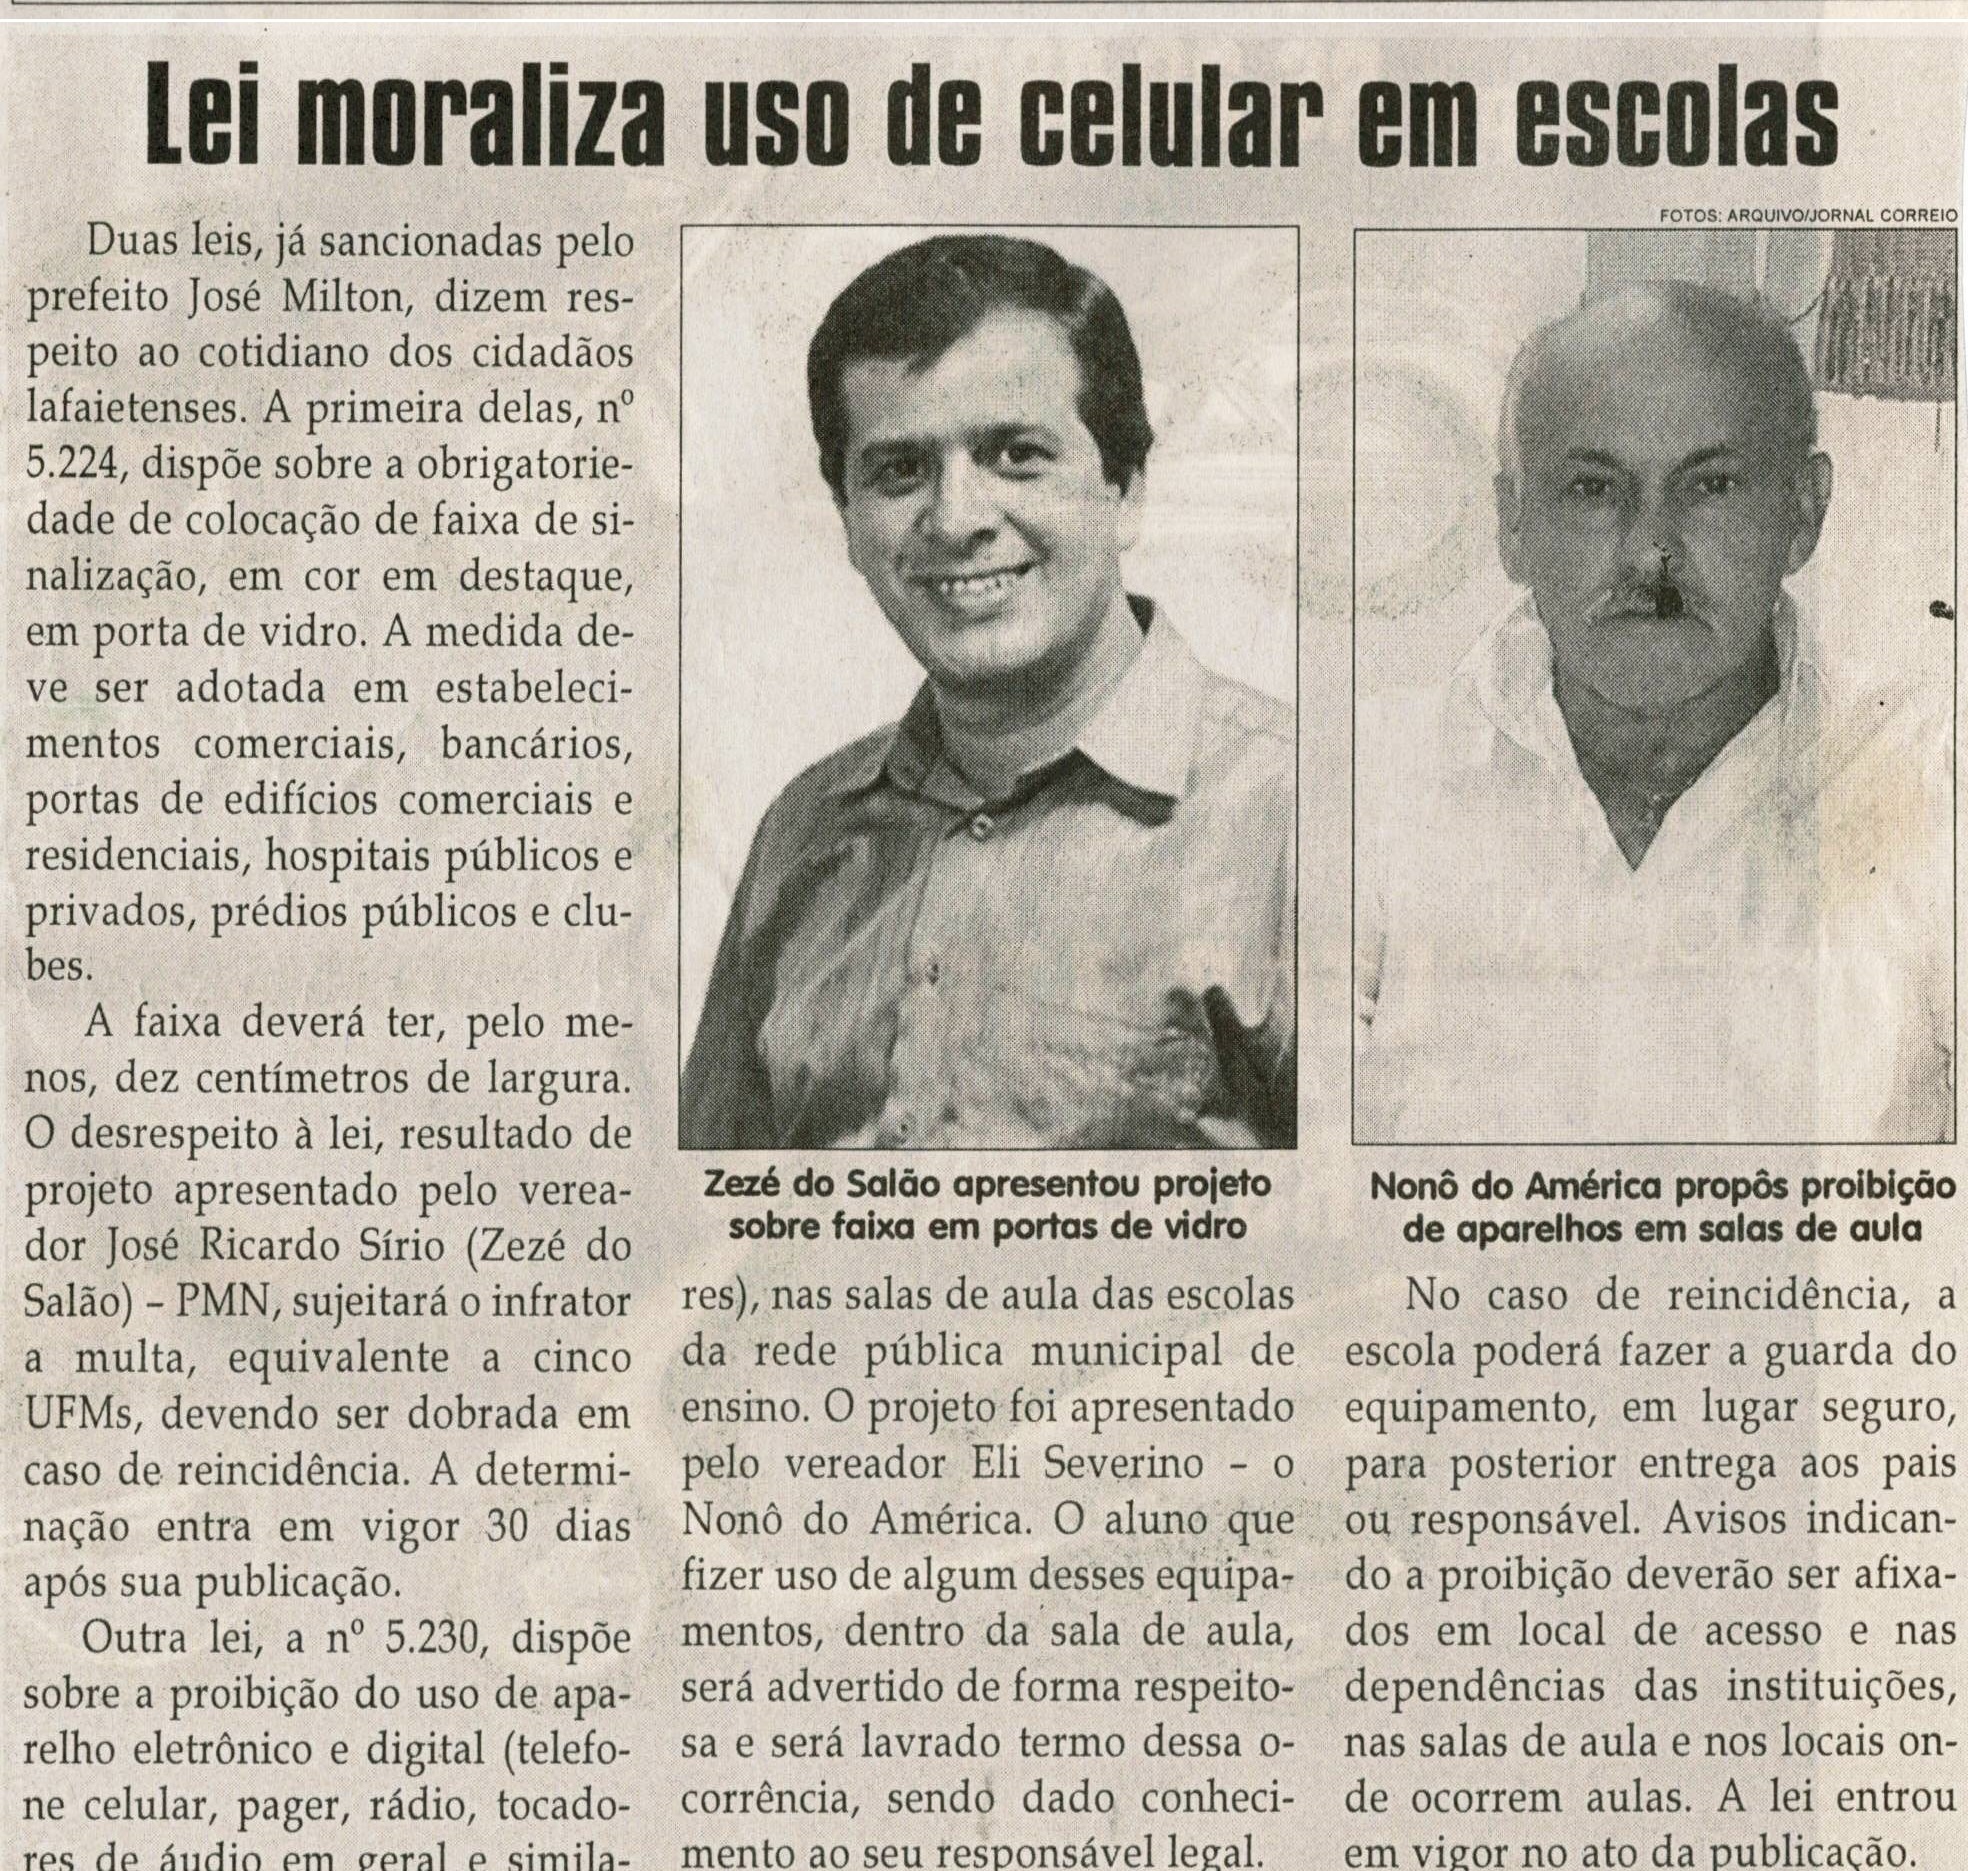 Lei moraliza uso de celular em escolas. Jornal Correio da Cidade, Conselheiro Lafaiete, 16 out 2010, p. 4.